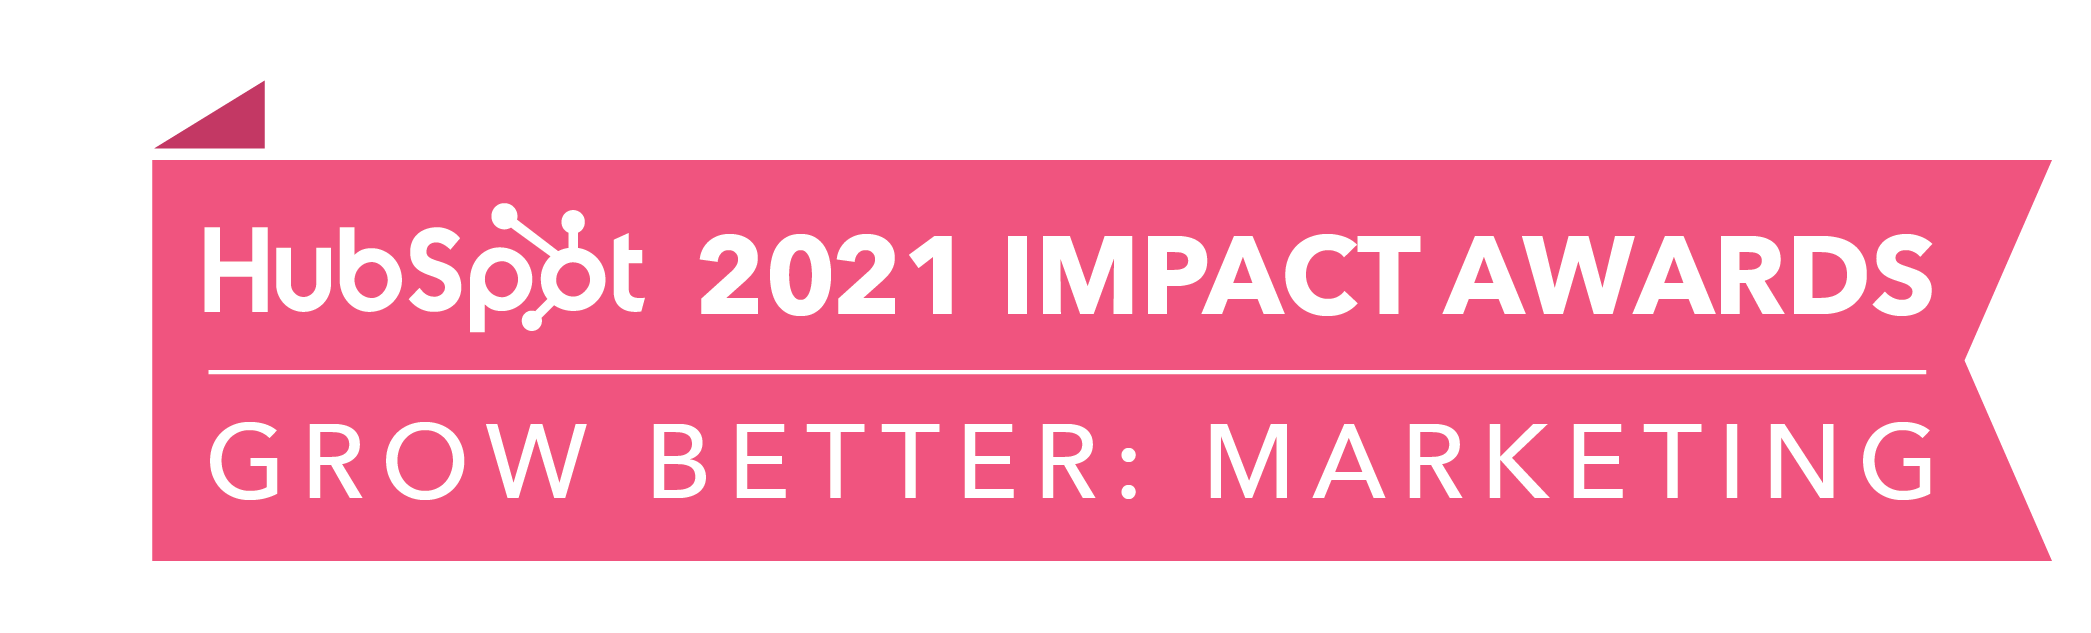 HubSpot_ImpactAwards_2021_GBMarketing2-2